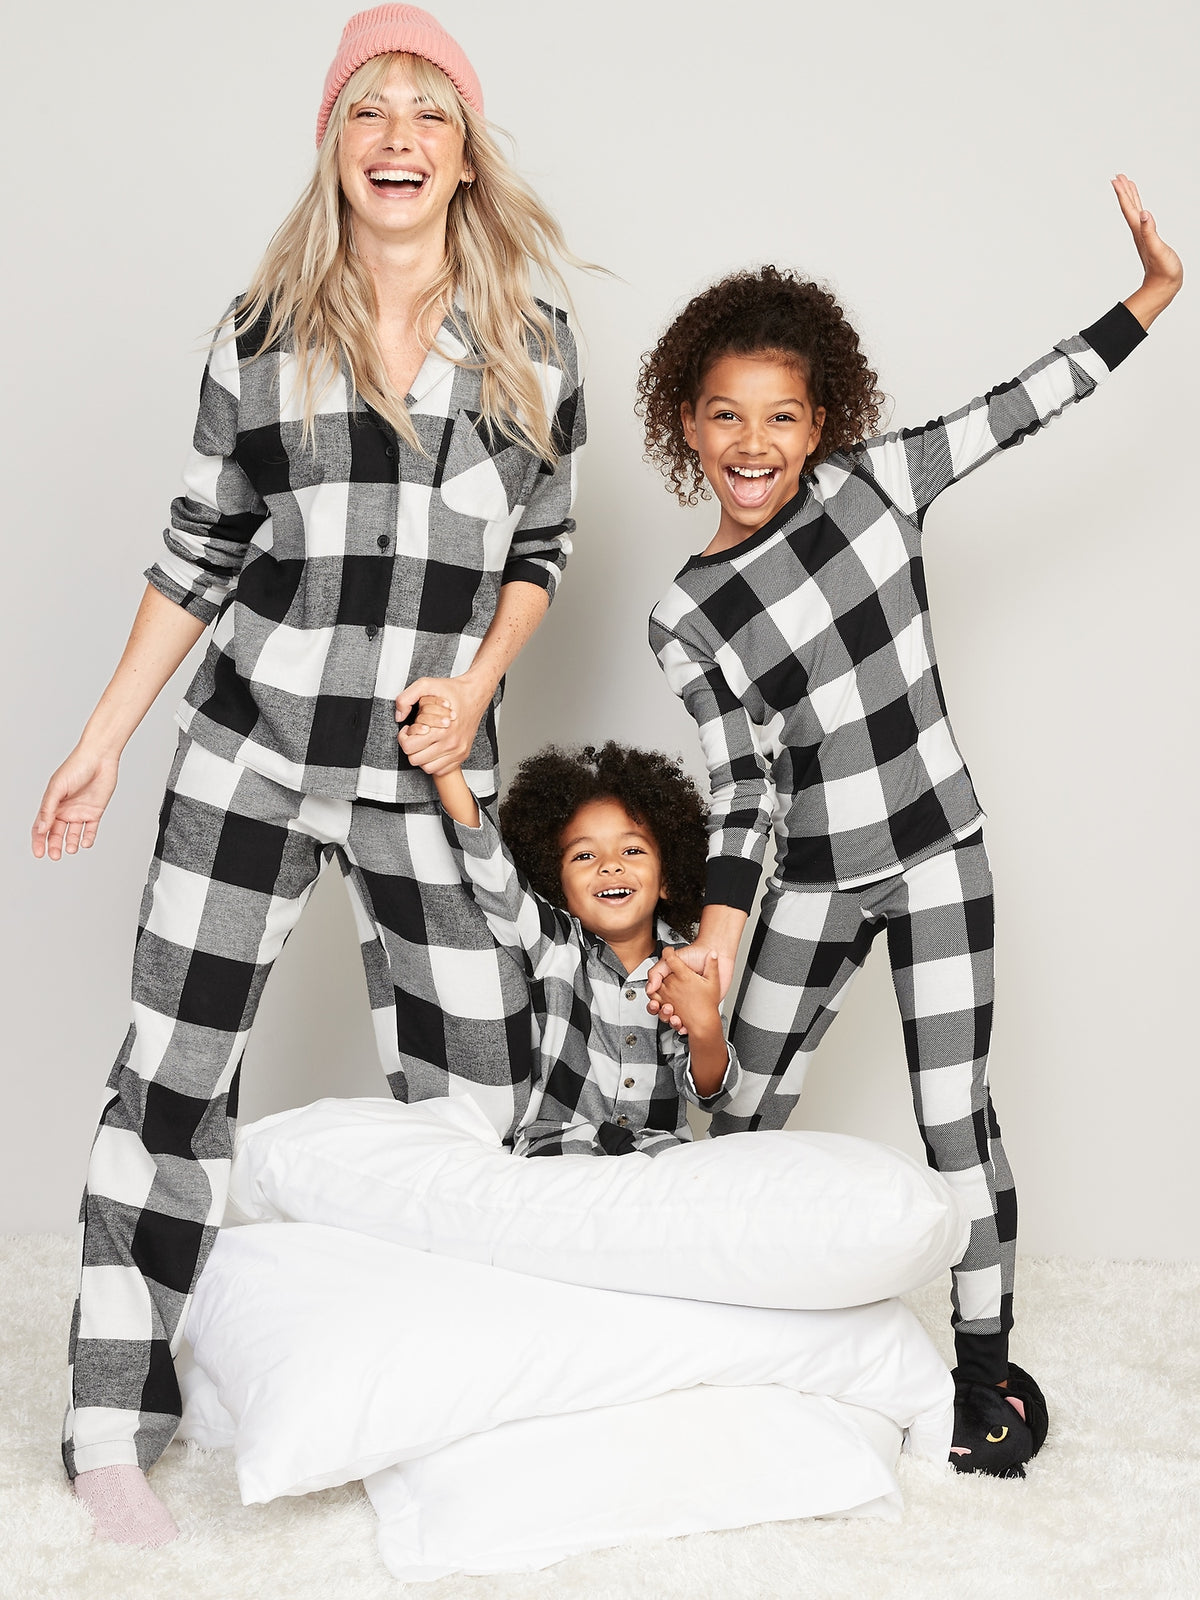 Matching Printed Pajama Set